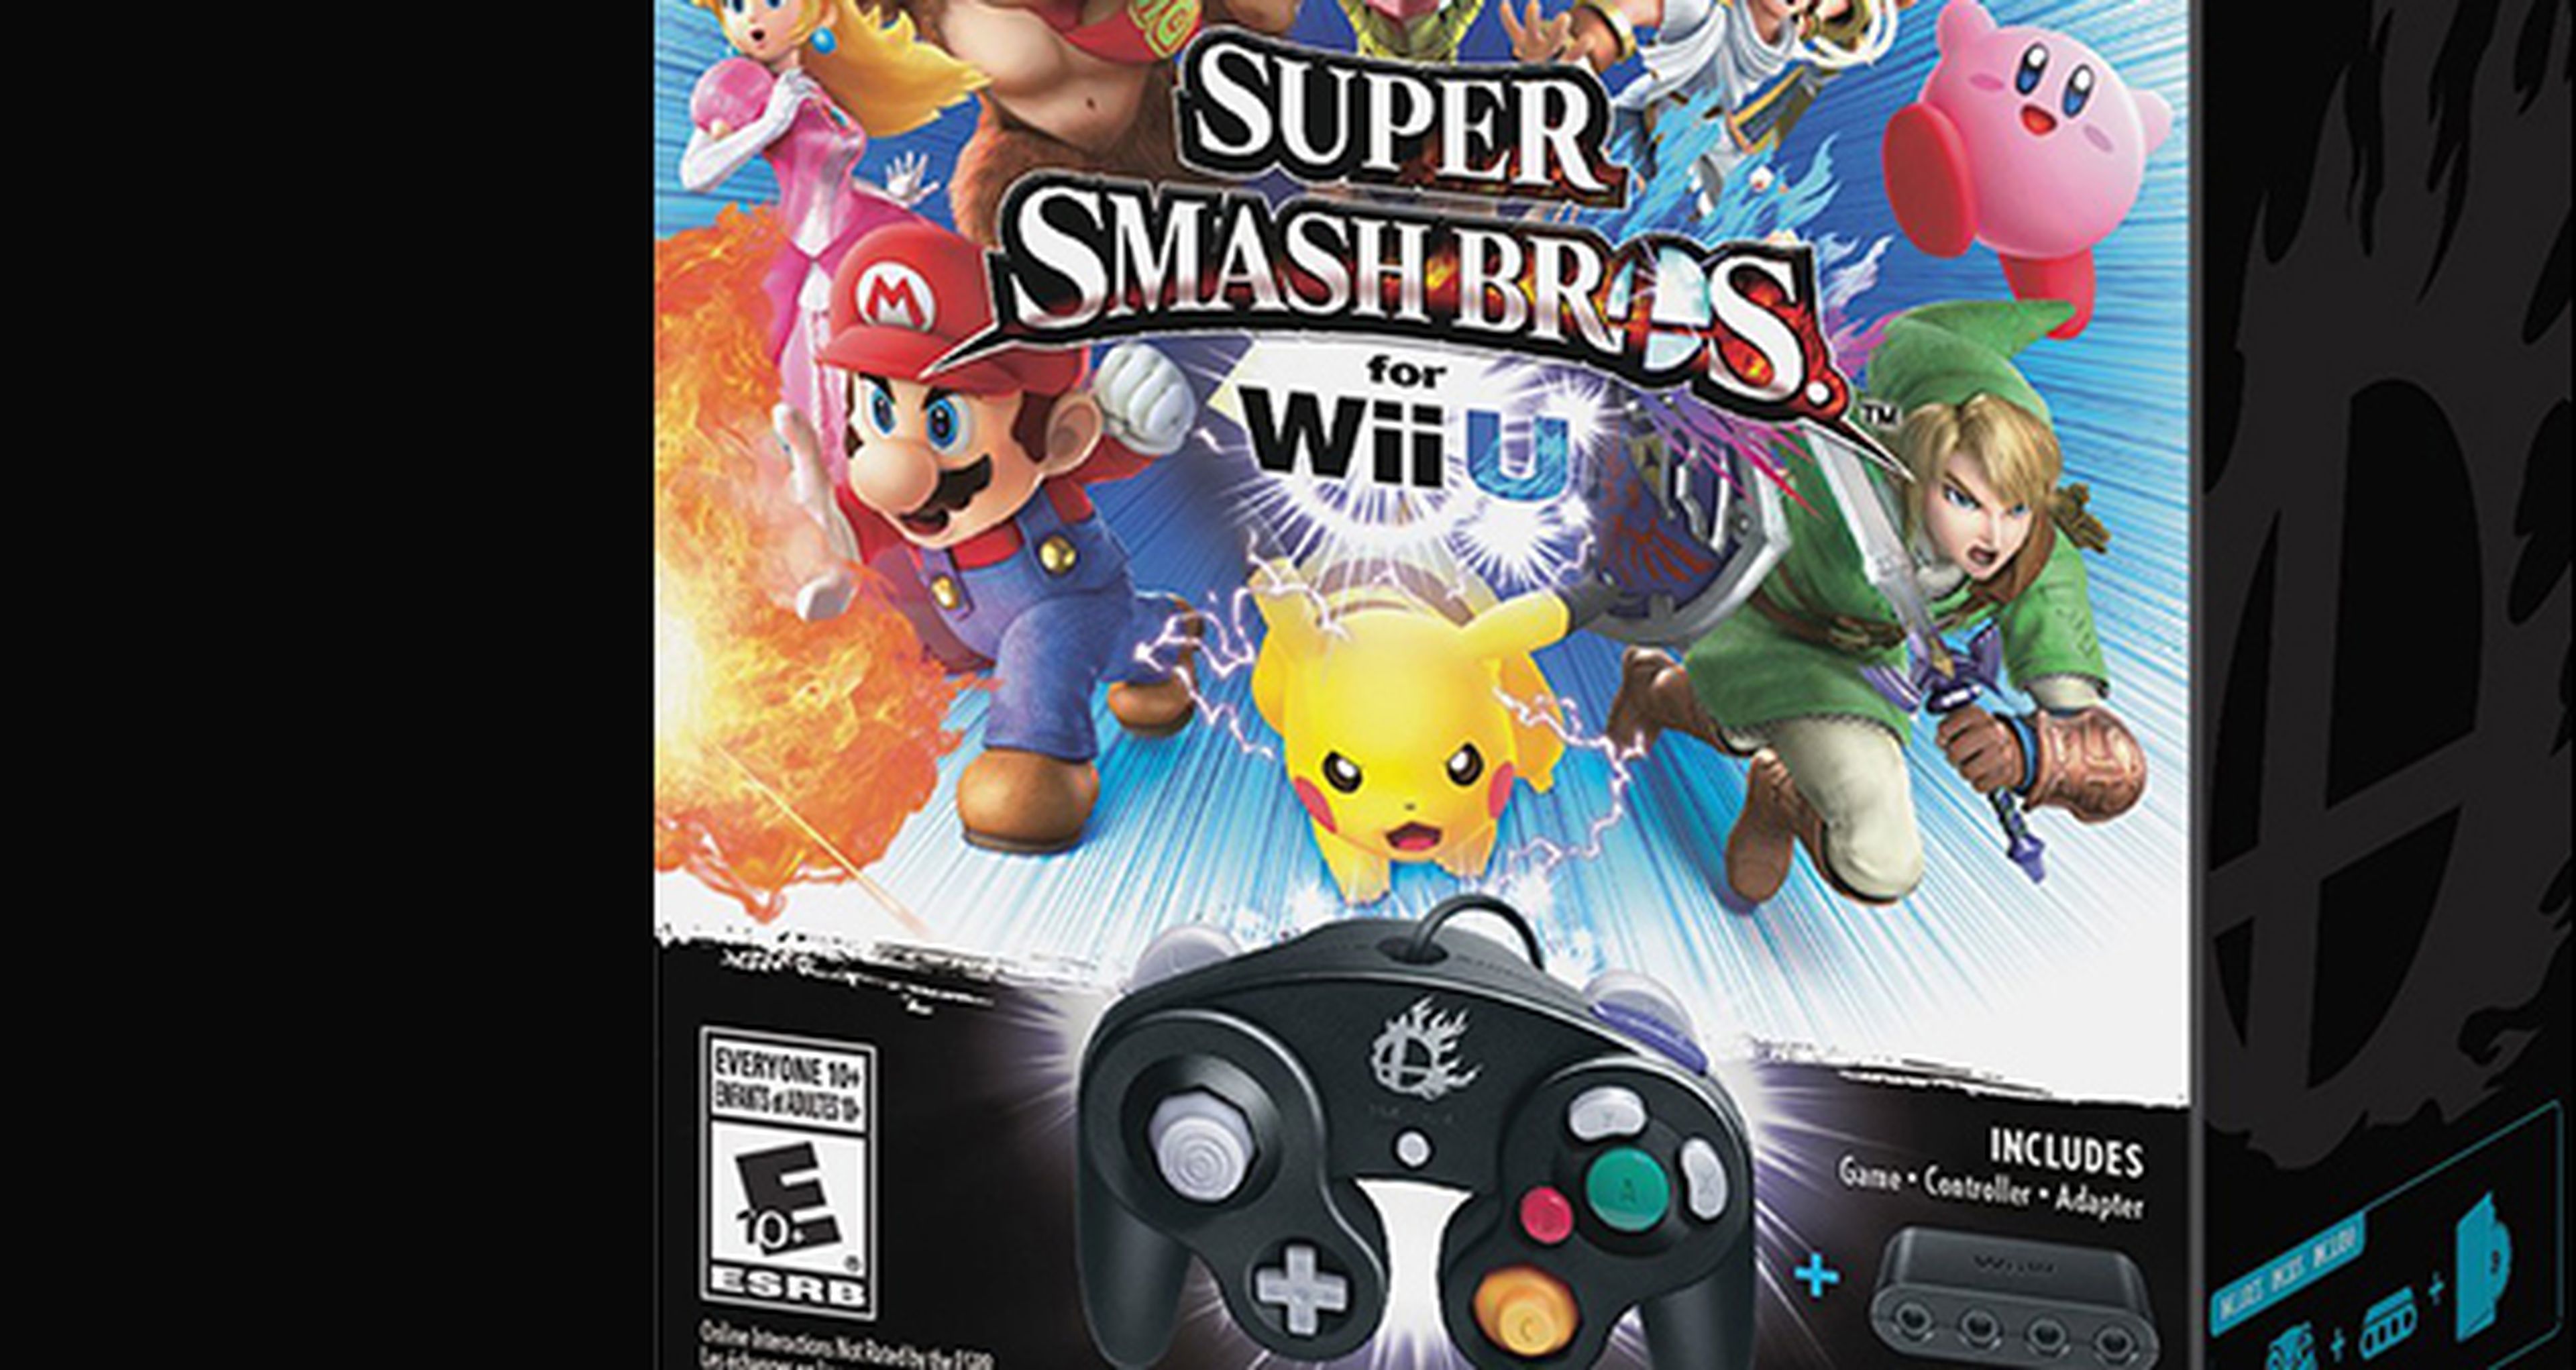 Nuevo pack de Super Smash Bros. Wii U y mando de GameCube